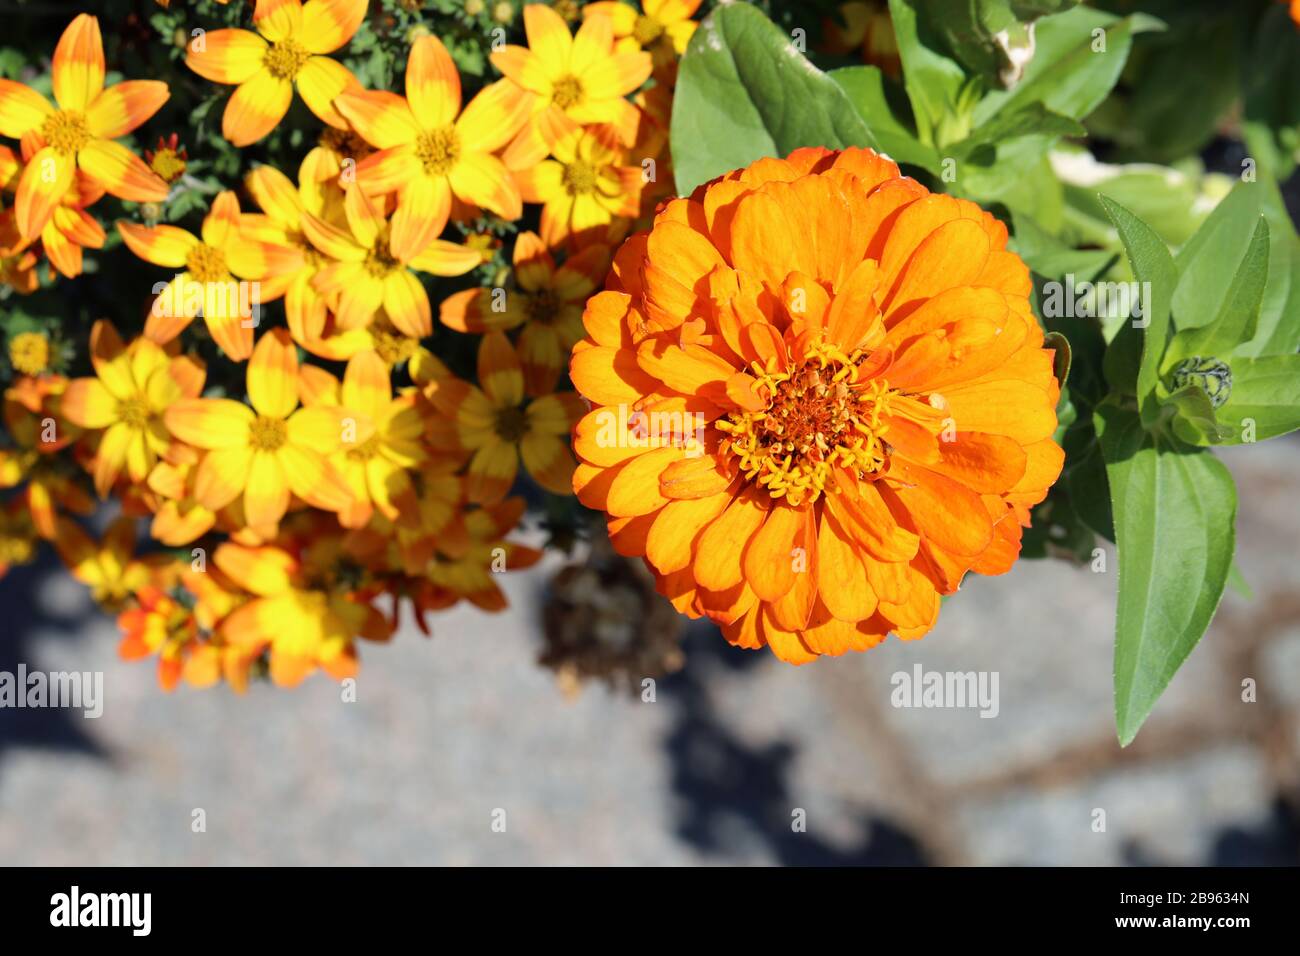 Fiore di color arancio brillante con molte foglie verdi e alcuni fiori gialli più piccoli in un'immagine a colori di primo piano. Vivace e colorato. Foto Stock